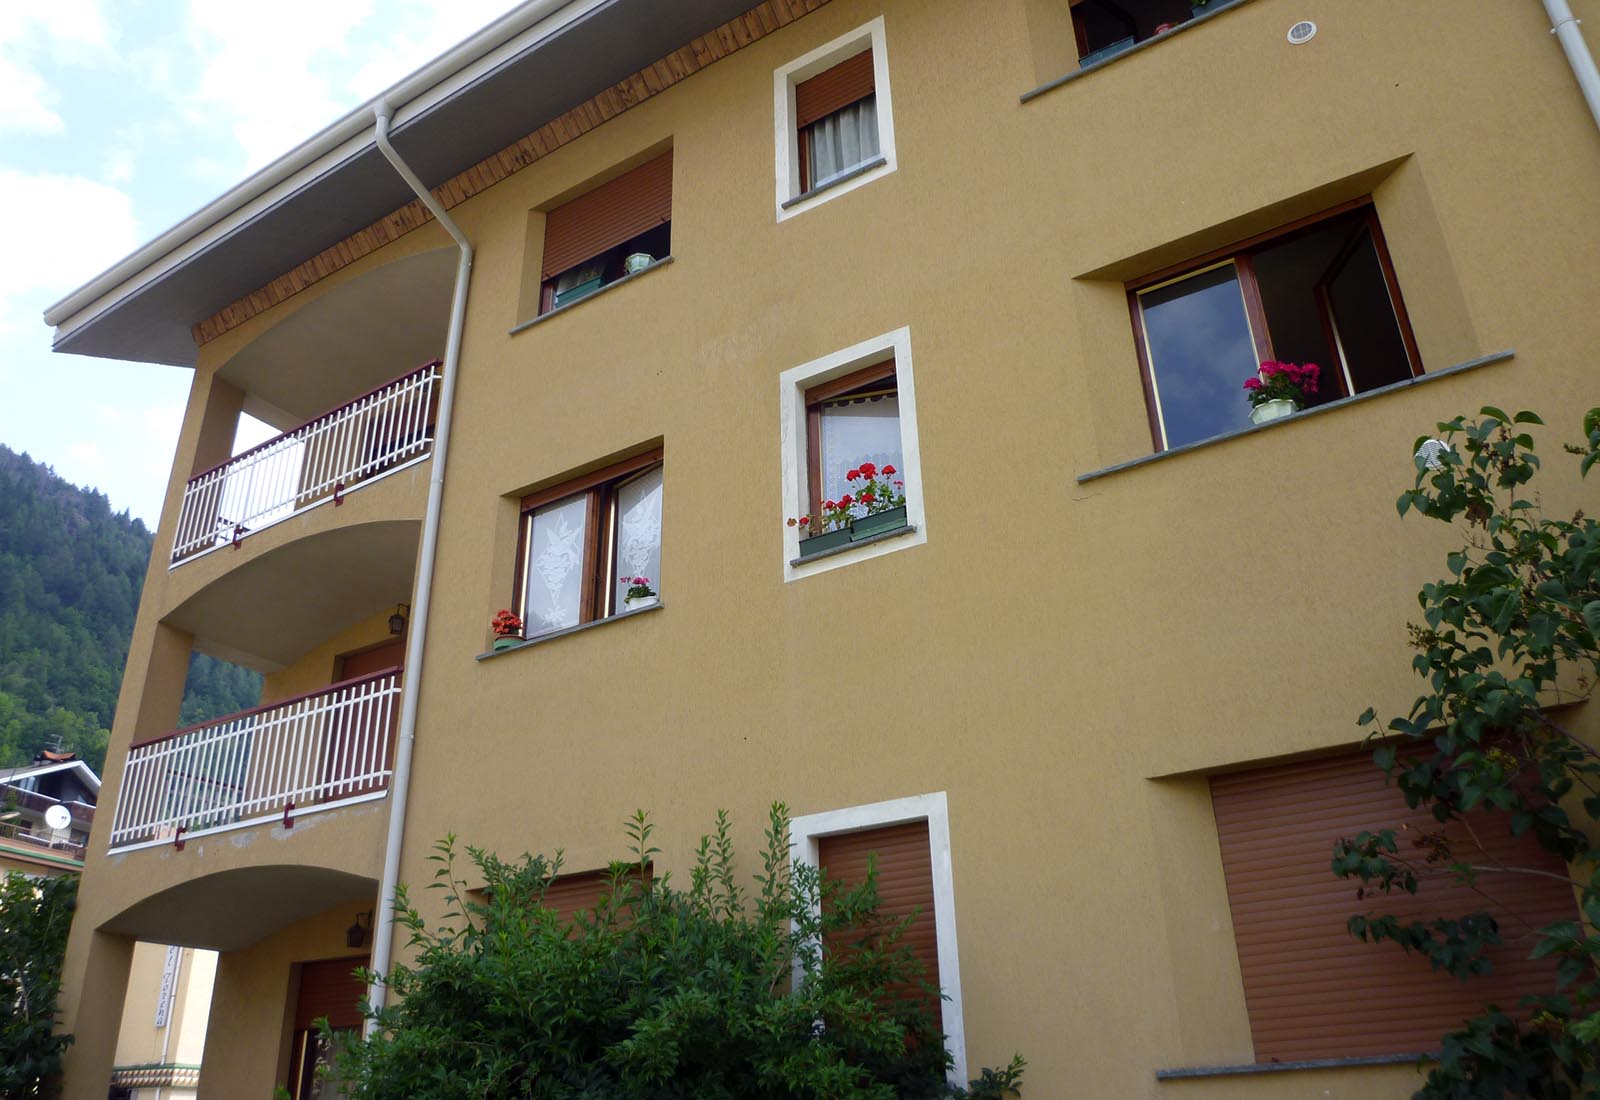 Riqualificazione edificio residenziale ad Aprica - Dettaglio della facciata